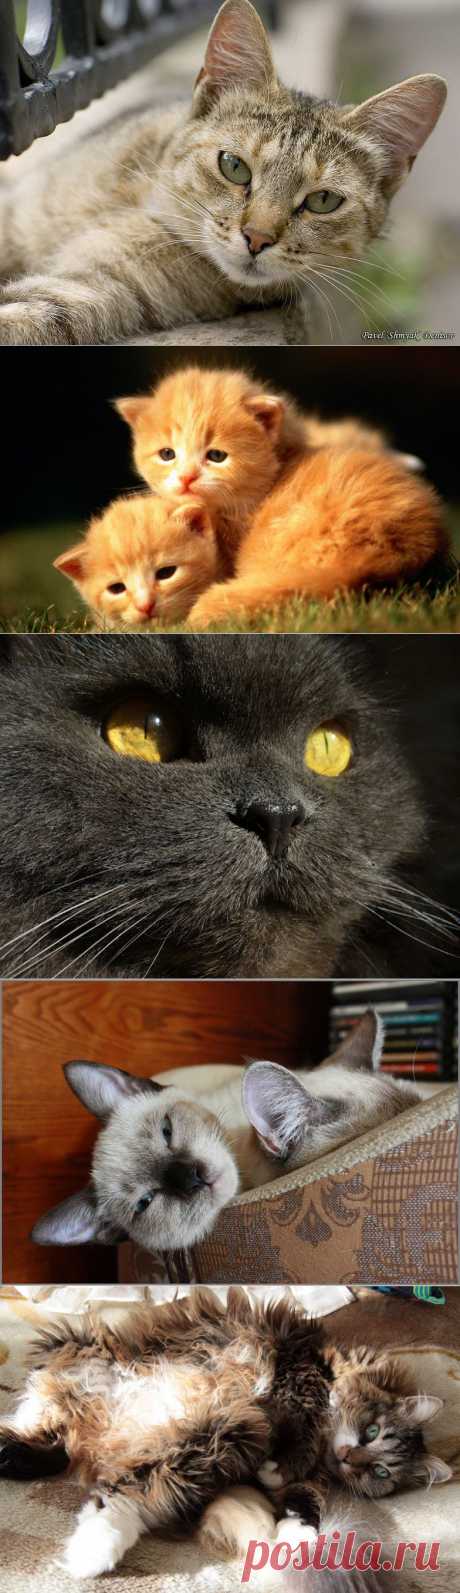 CATFOTO.COM фотографии кошек и котят, дикие кошки, блоги любителей кошек